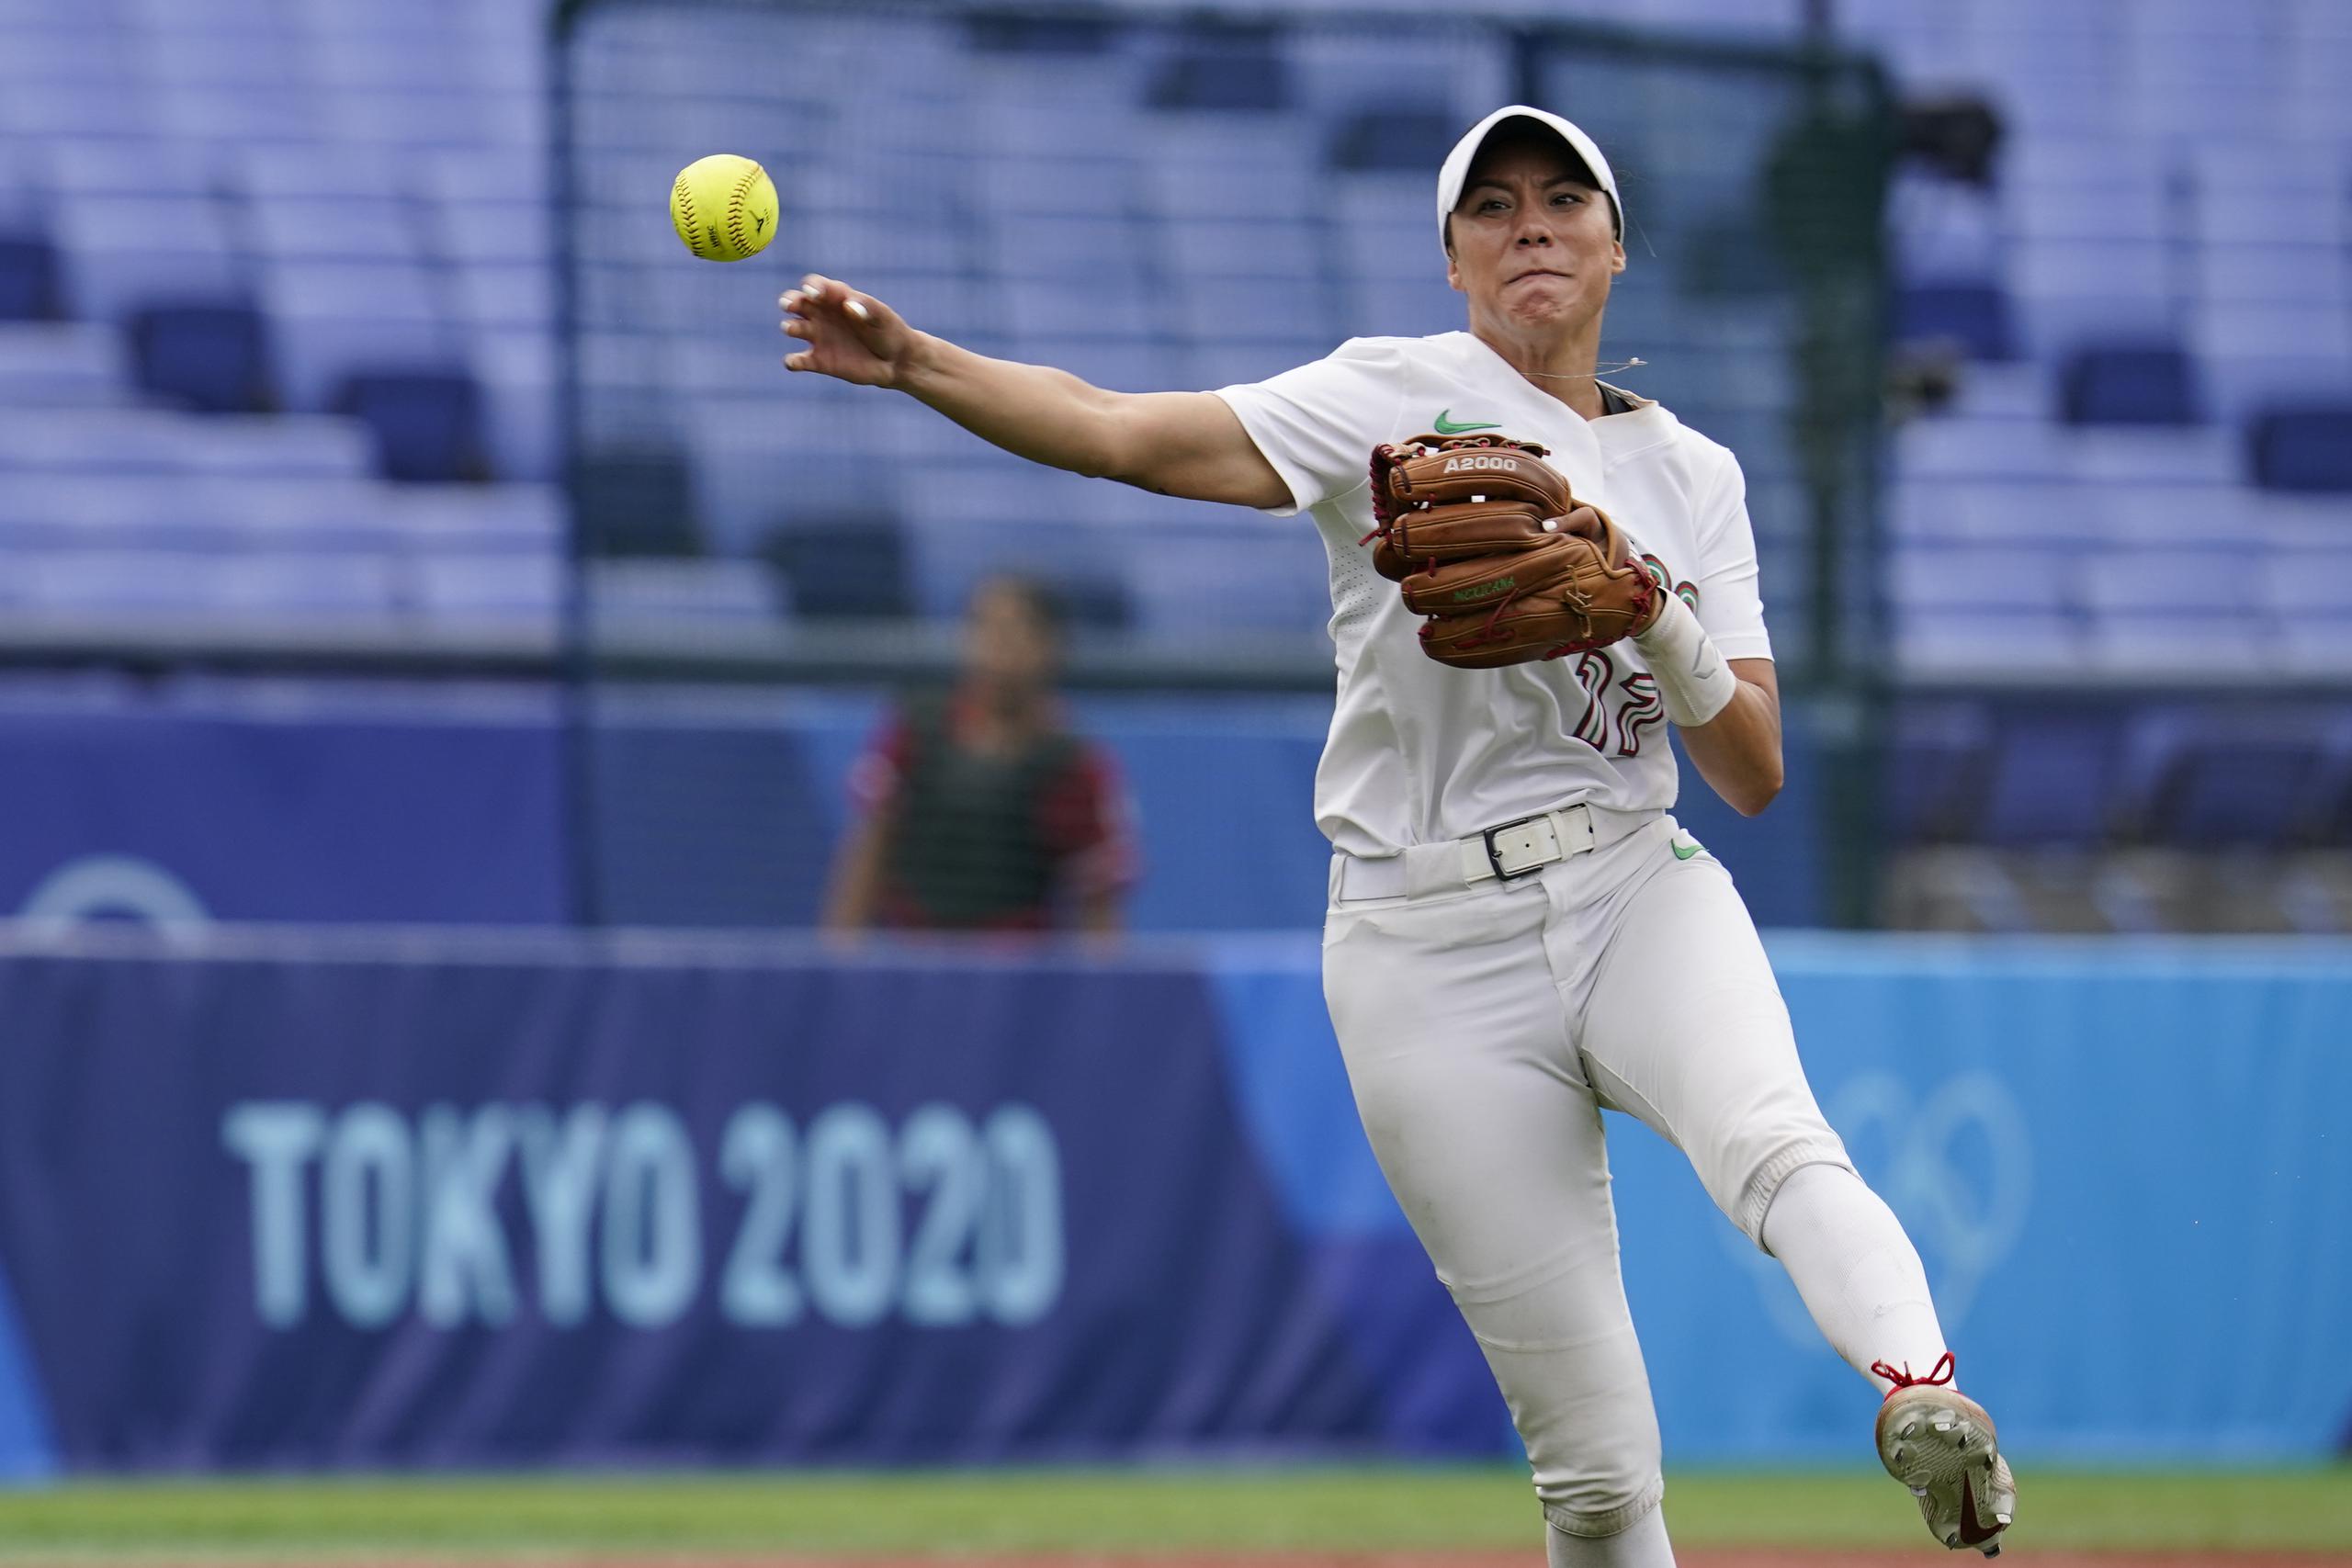 La mexicana Anissa Urtez lanza a primera base durante un partido con Canadá por el bronce en el torneo olìmpico de sóftbol de Tokio 2020.